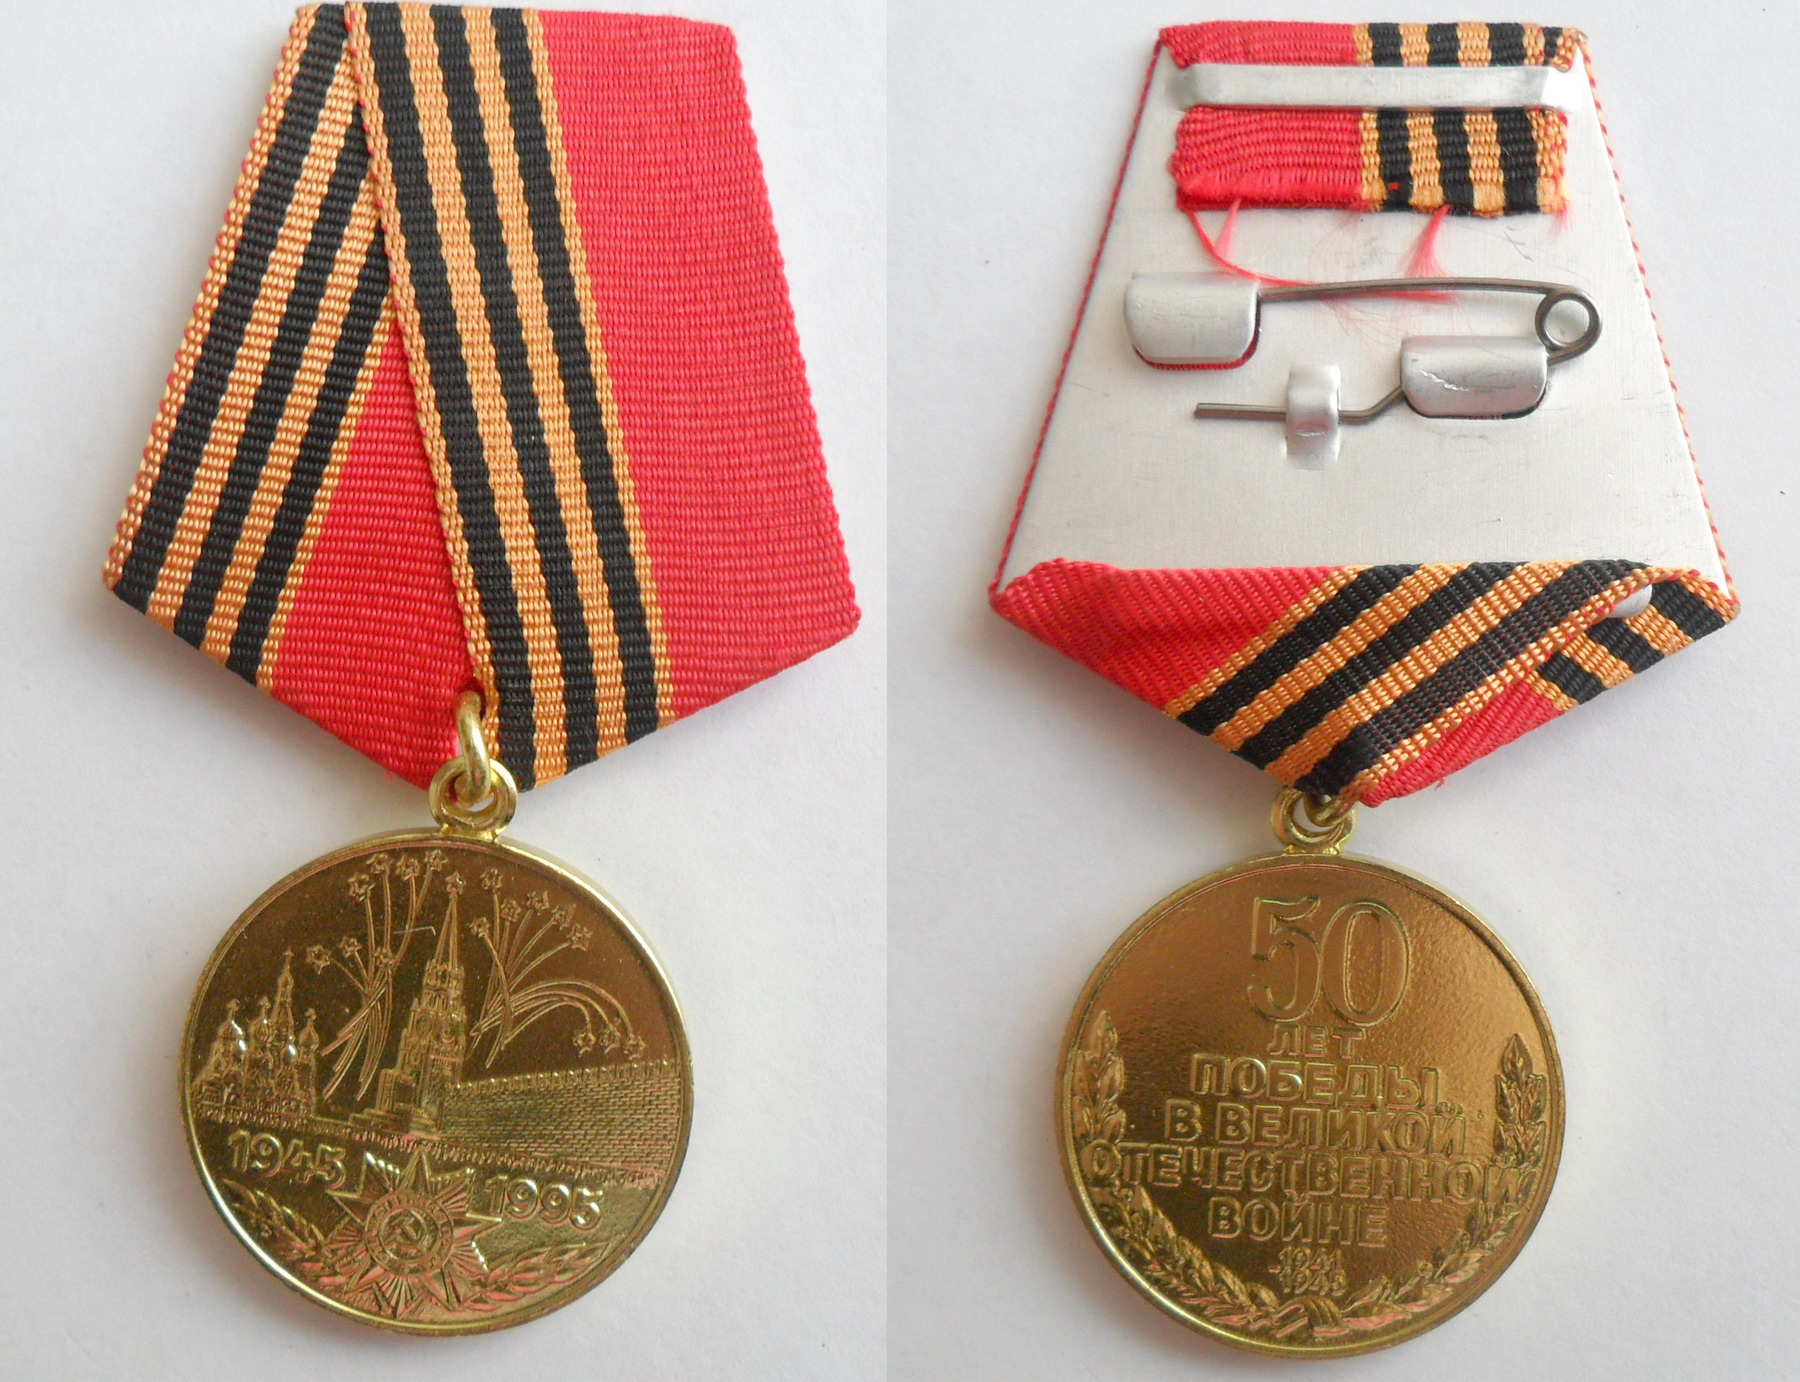 Юбилейная медаль 50 лет Победы